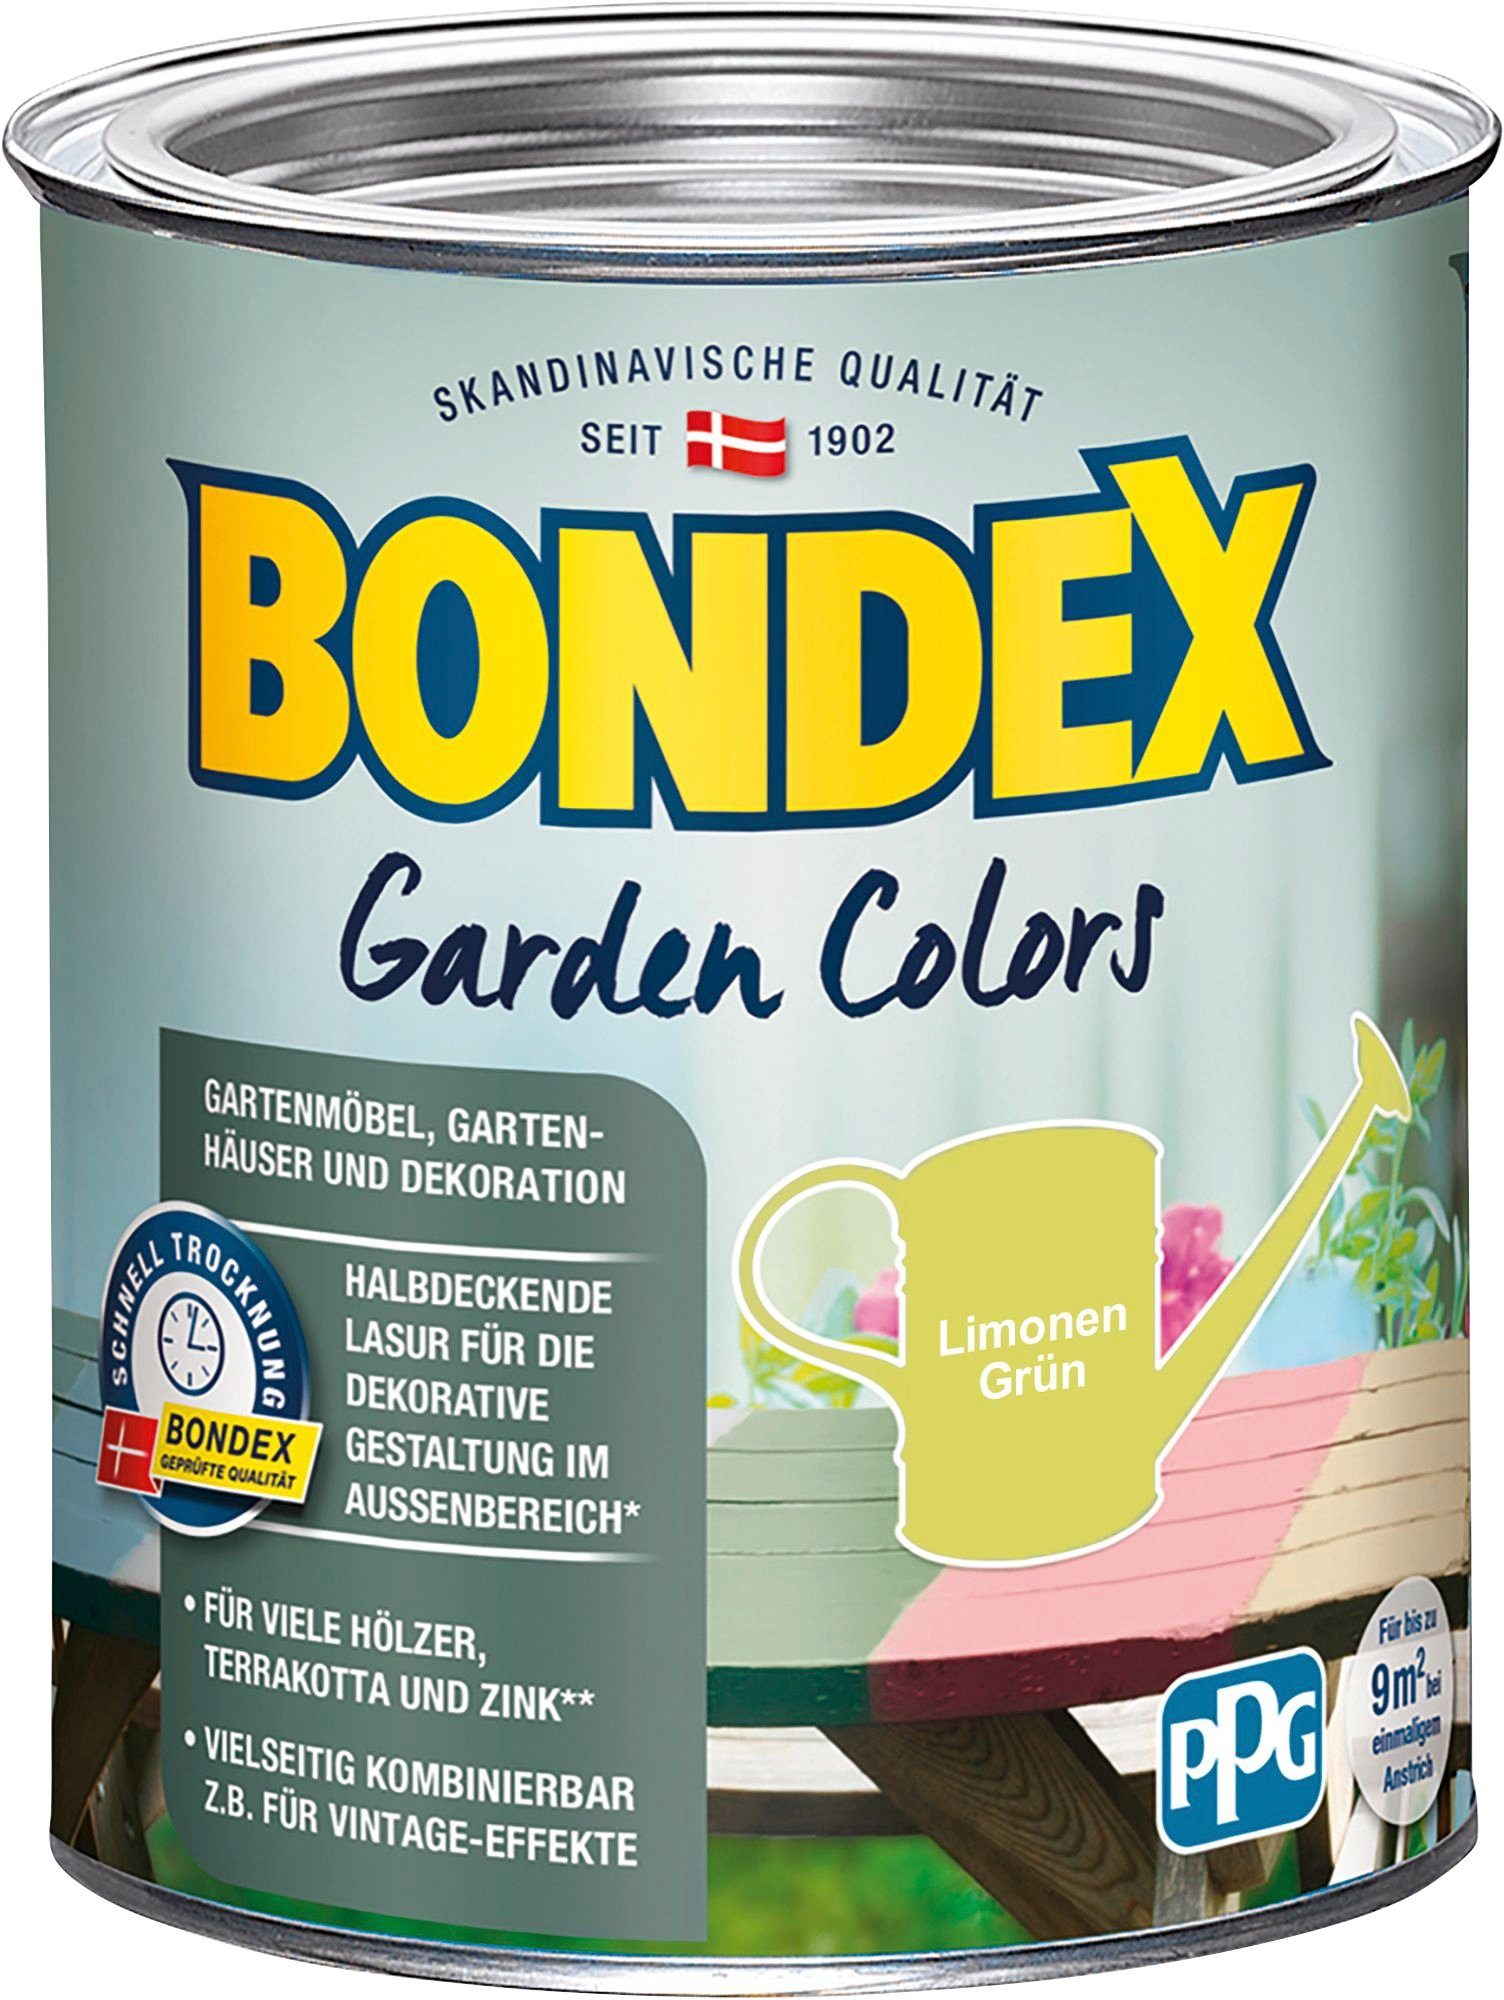 Bondex Wetterschutzfarbe GARDEN COLORS, Behagliches Grün, 0,75 Liter Inhalt Limonen Grün